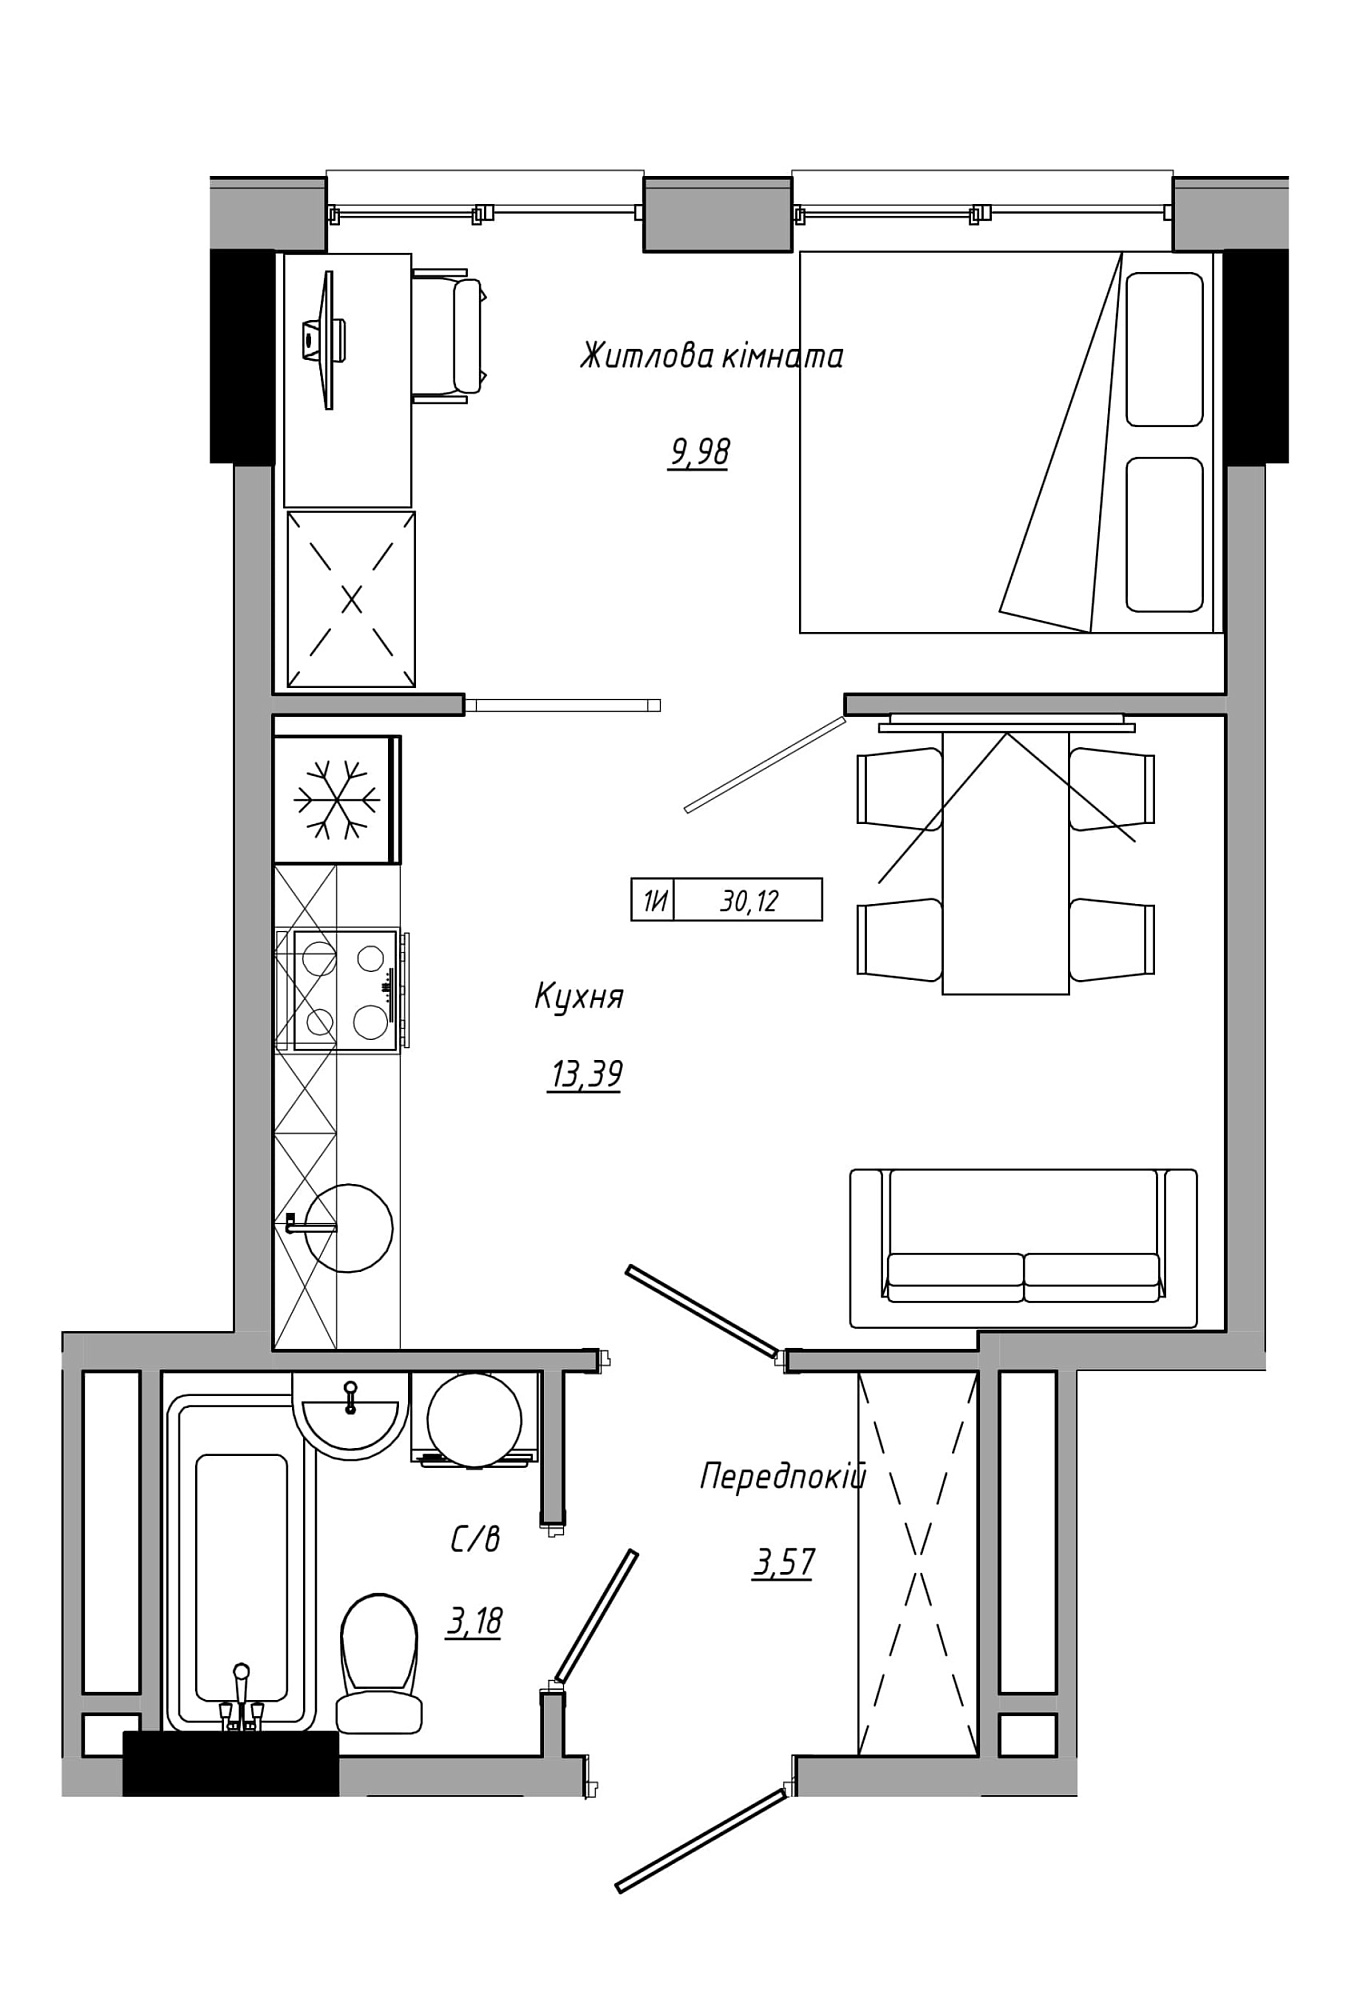 Планування 1-к квартира площею 30.12м2, AB-21-12/00012.